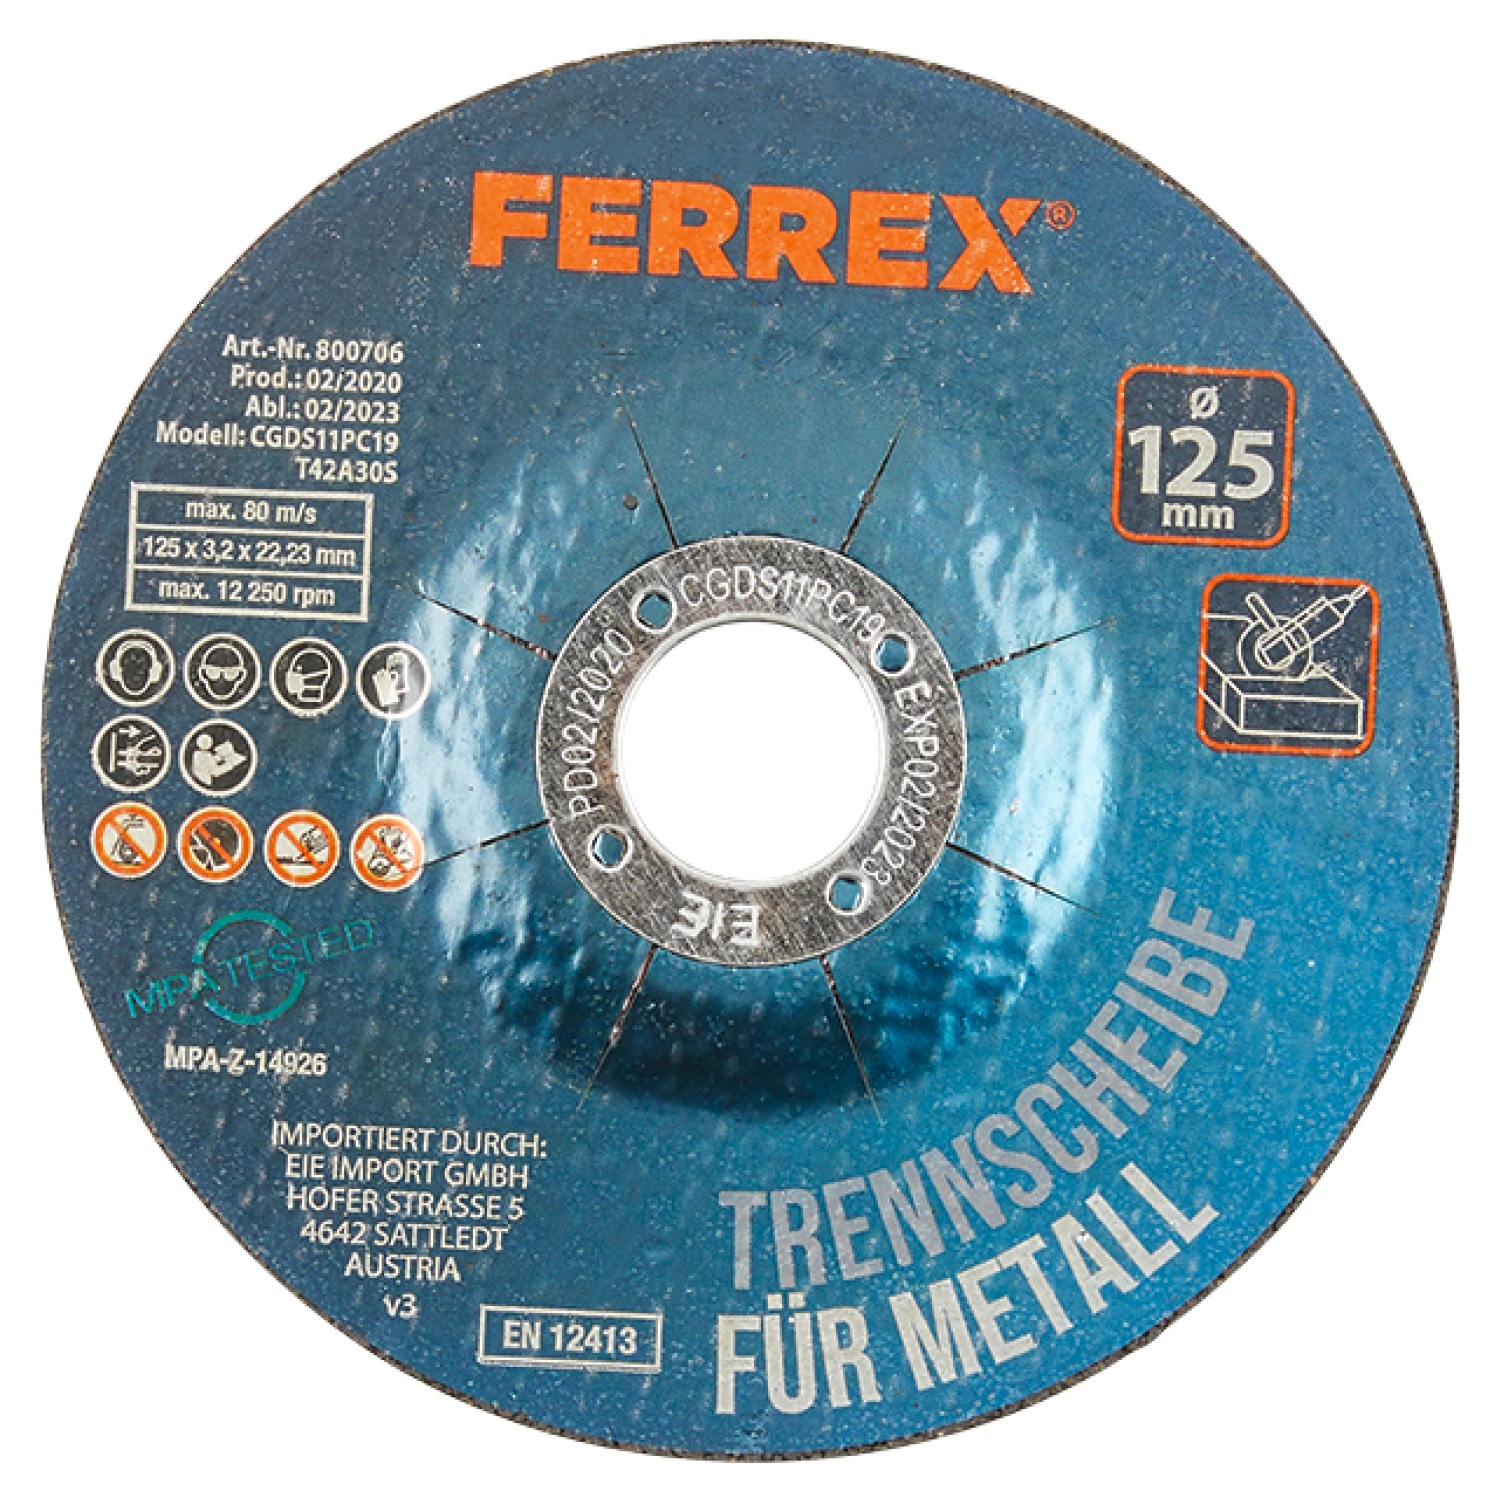 FERREX® Trennscheiben-Set